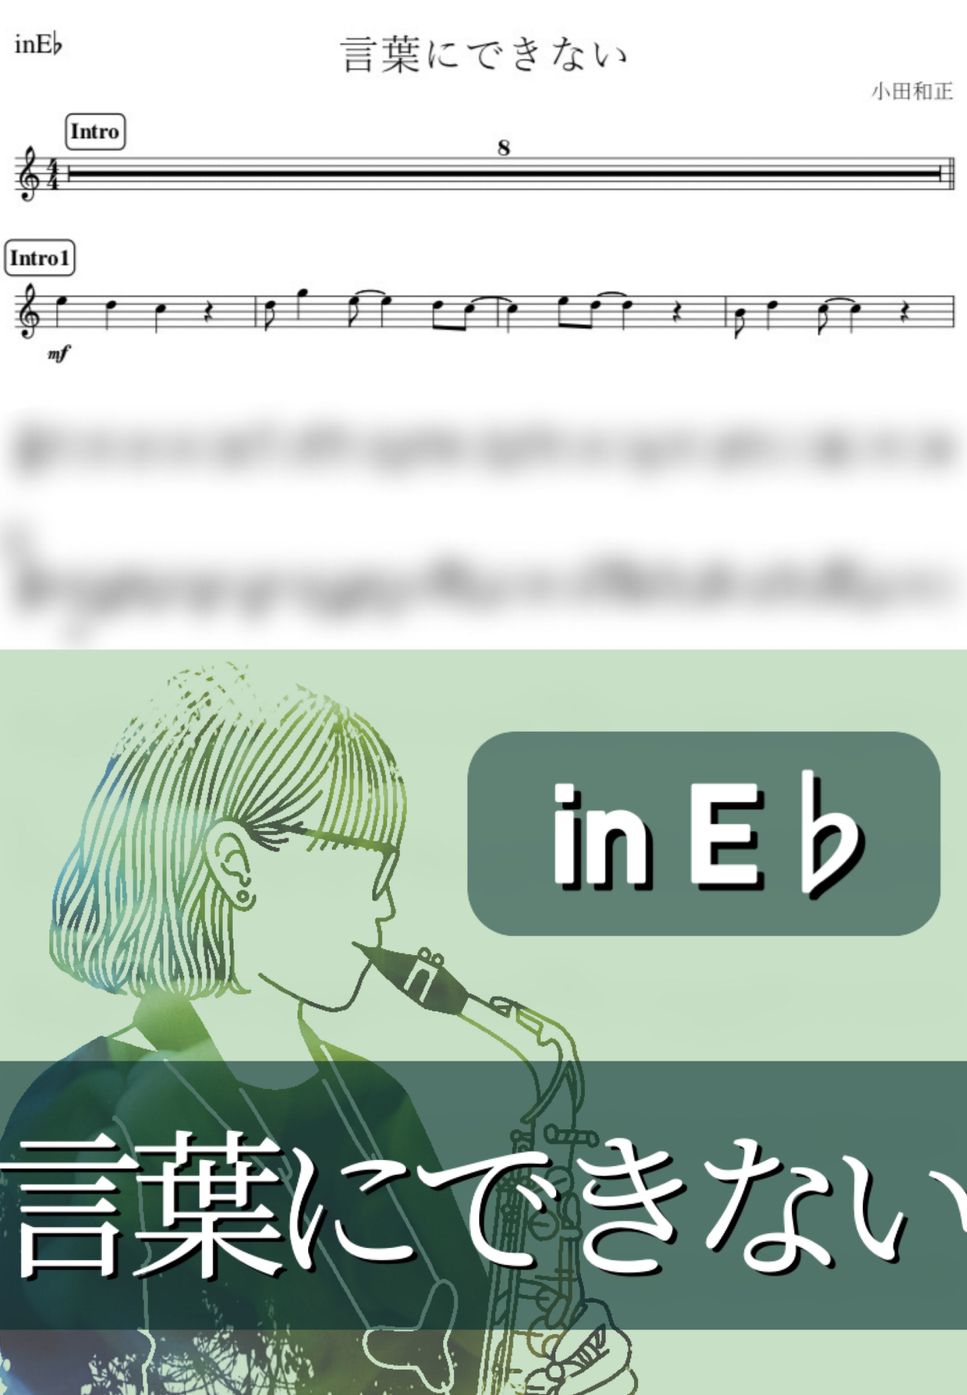 小田和正 - 言葉にできない (E♭) by kanamusic